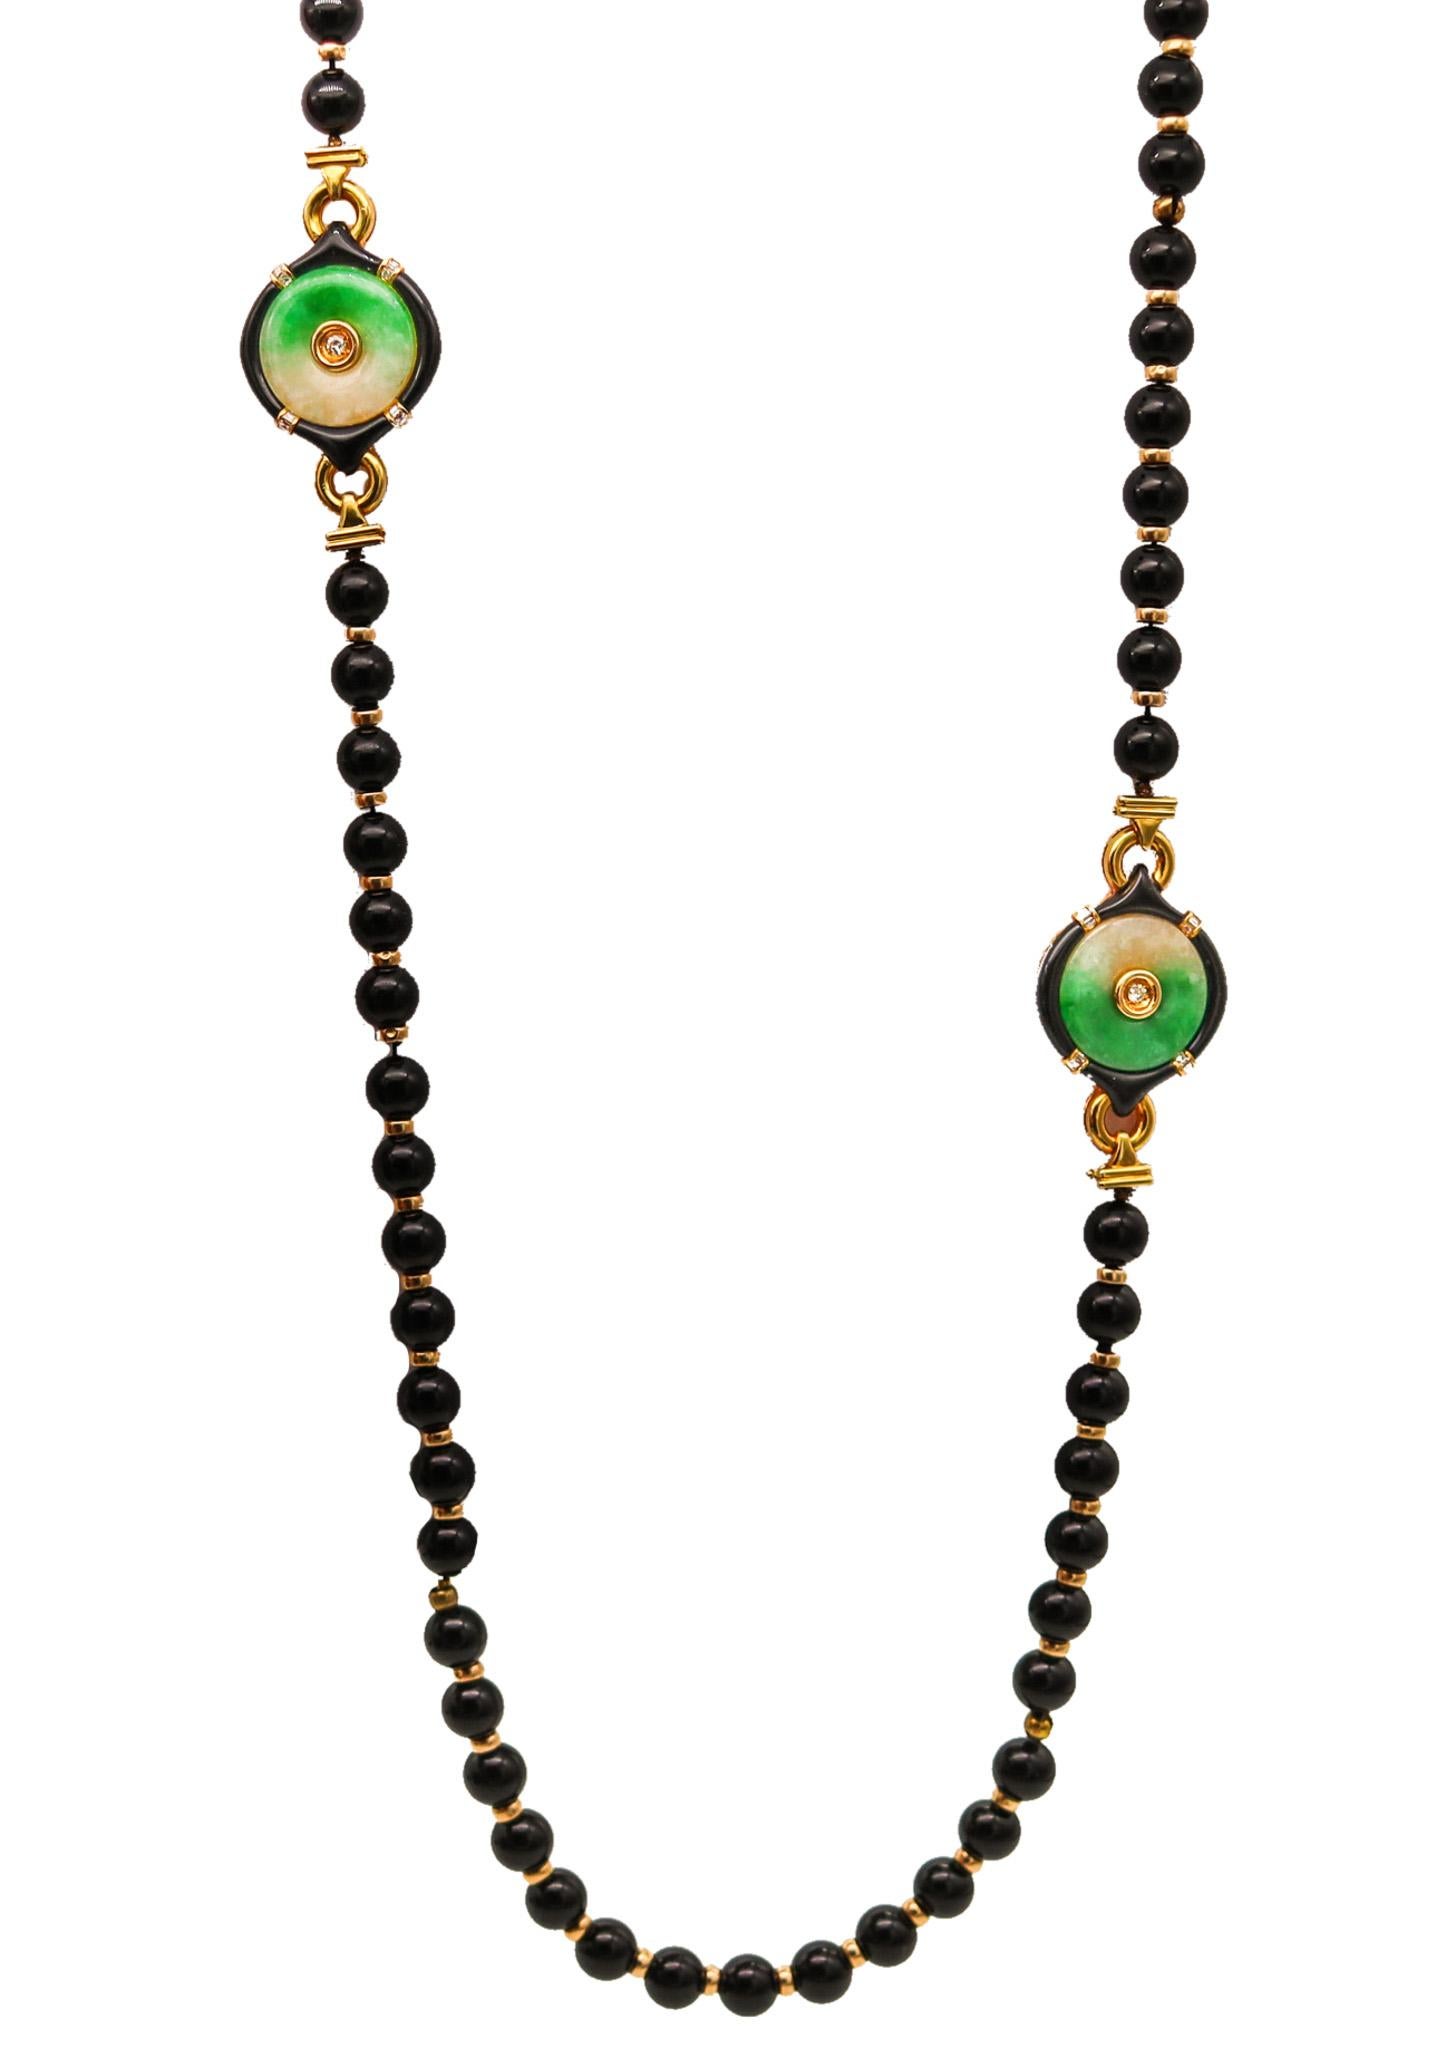 Collier sautoir aux motifs orientalistes conçu par Gumps.

Magnifique collier coloré, créé par Gumps dans les années 1970. Ce sautoir long a été réalisé avec des motifs classiques de chinoiserie en or jaune massif de 18 carats avec une finition